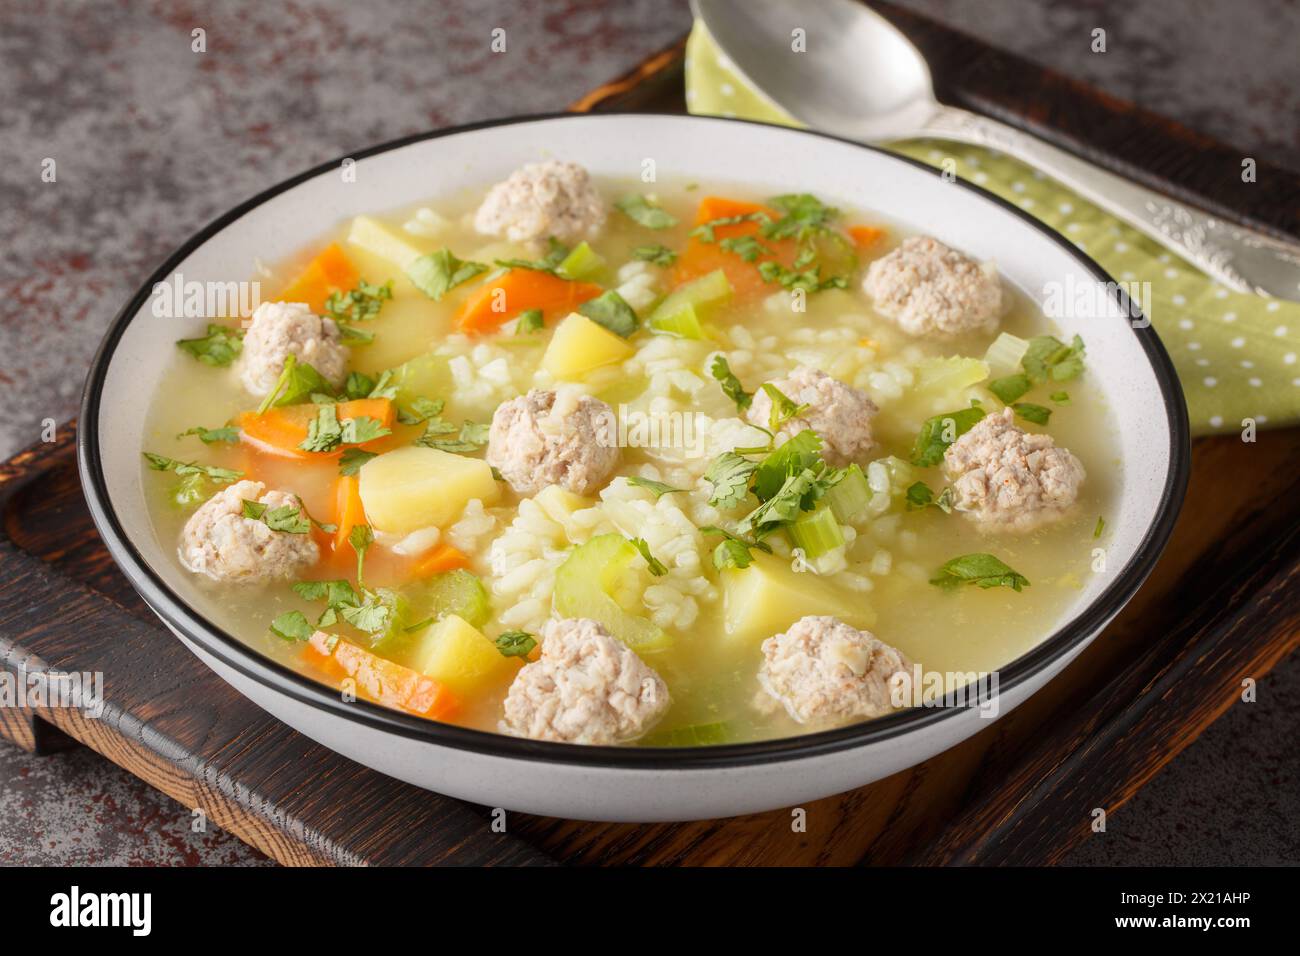 Soupe de boulettes de riz maison chaude avec céleri, carottes, oignons et pommes de terre gros plan dans un bol sur la table. Horizontal Banque D'Images